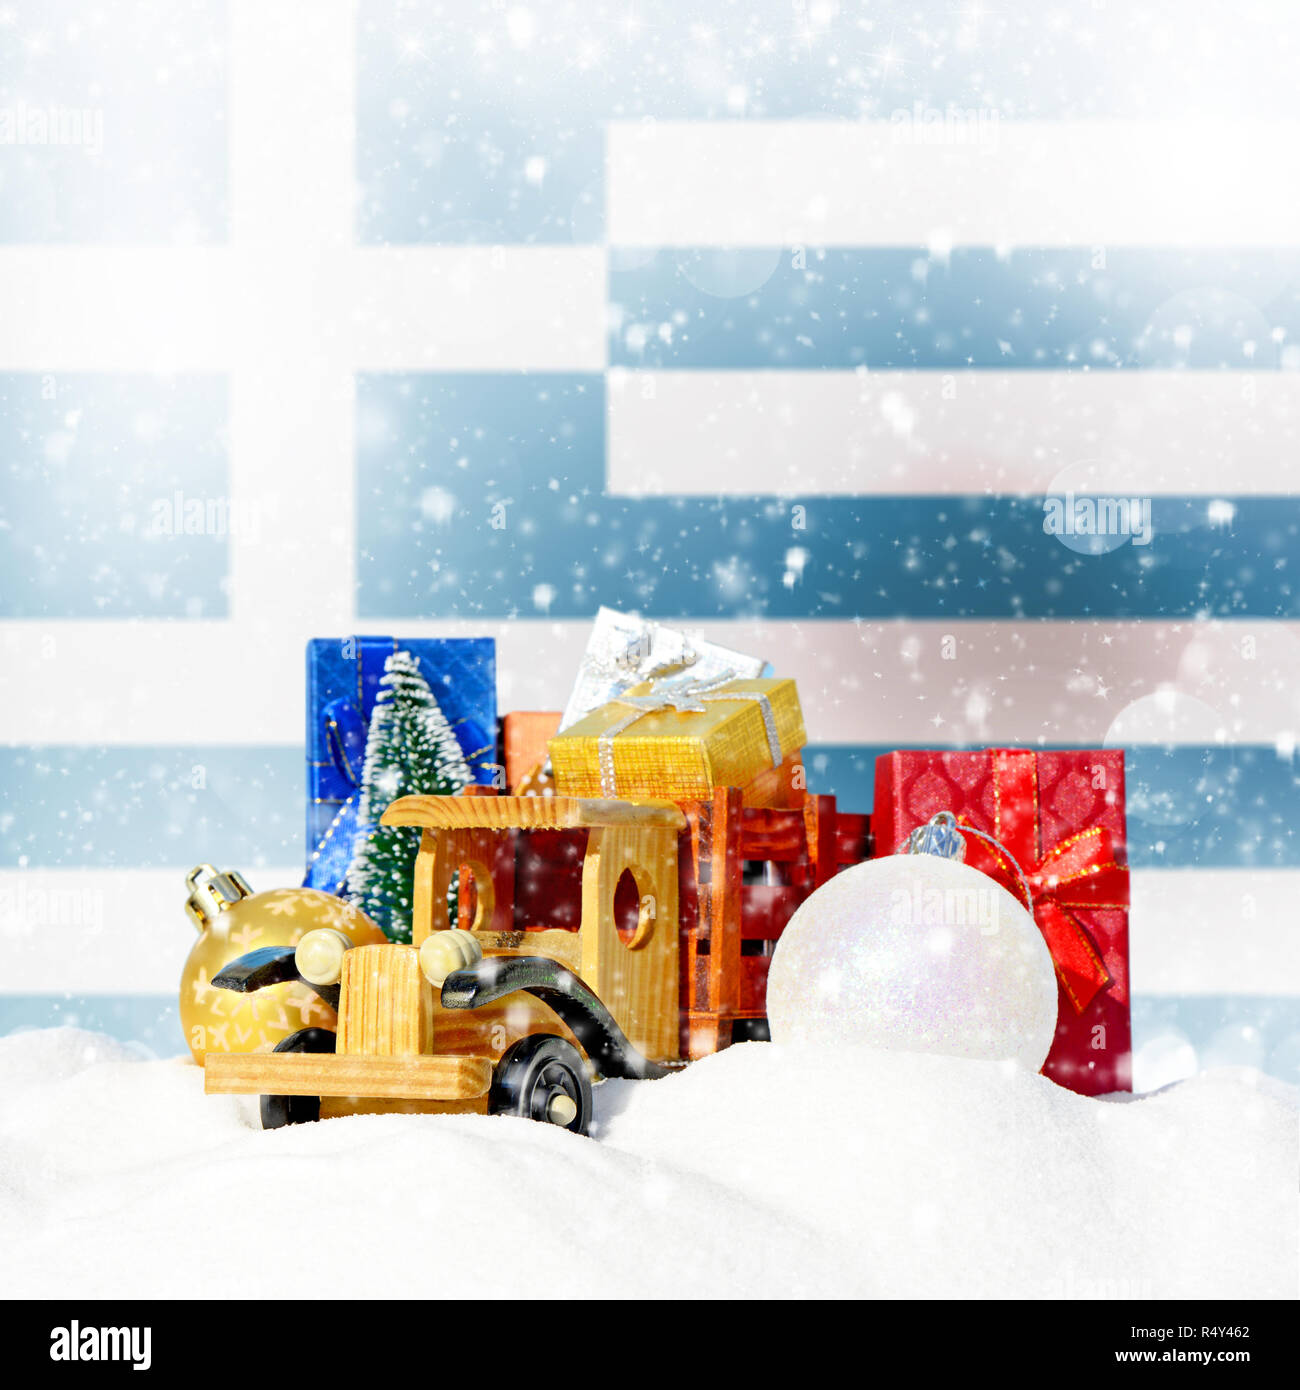 Weihnachten Hintergrund. Spielzeug-LKW mit Geschenken, Neues Jahr Tanne, Kugeln im Schneetreiben und griechische Flagge Stockfoto